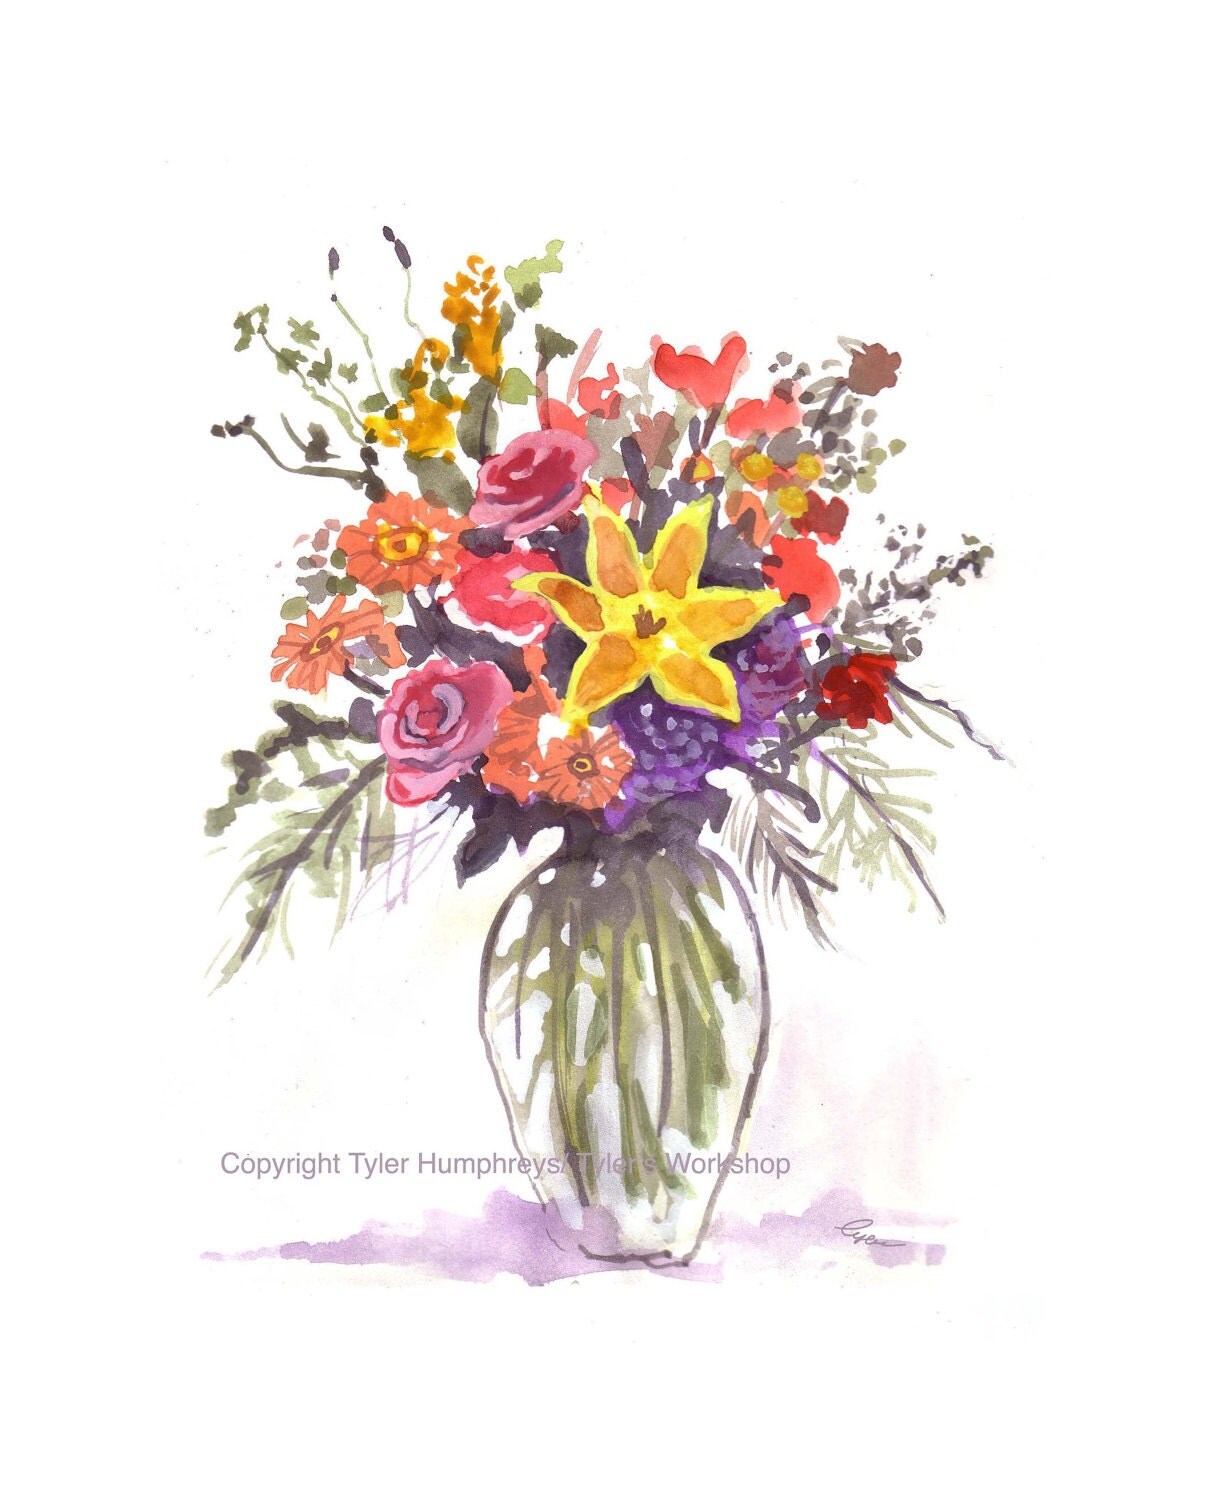 Garden Flowers Greeting Card Watercolor Flowers by tylersworkshop